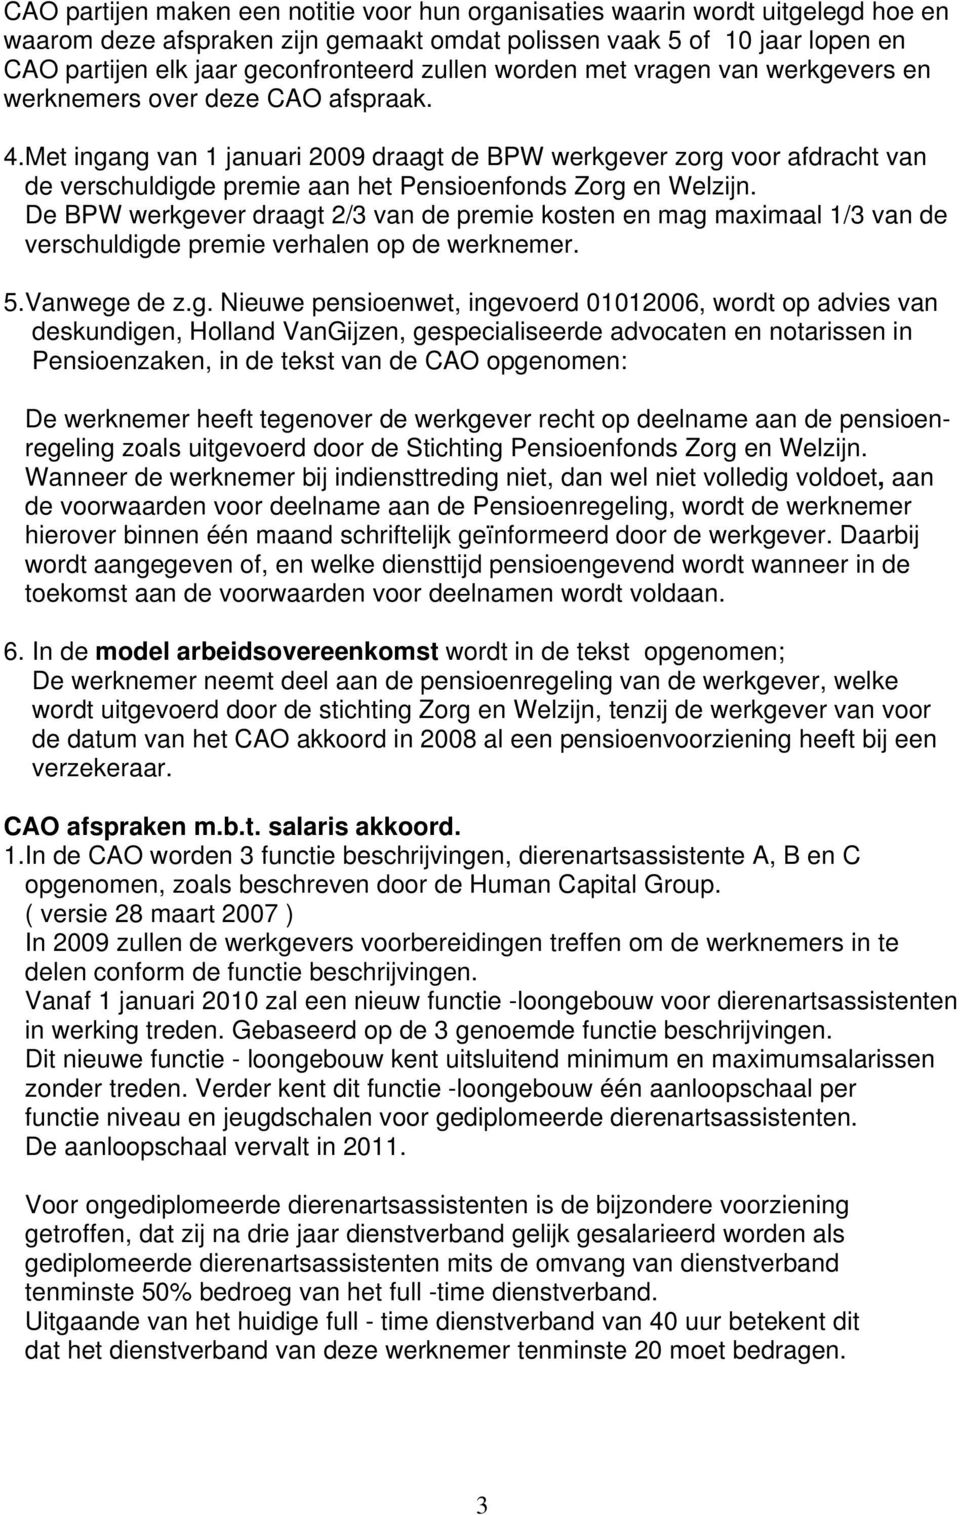 Met ingang van 1 januari 2009 draagt de BPW werkgever zorg voor afdracht van de verschuldigde premie aan het Pensioenfonds Zorg en Welzijn.